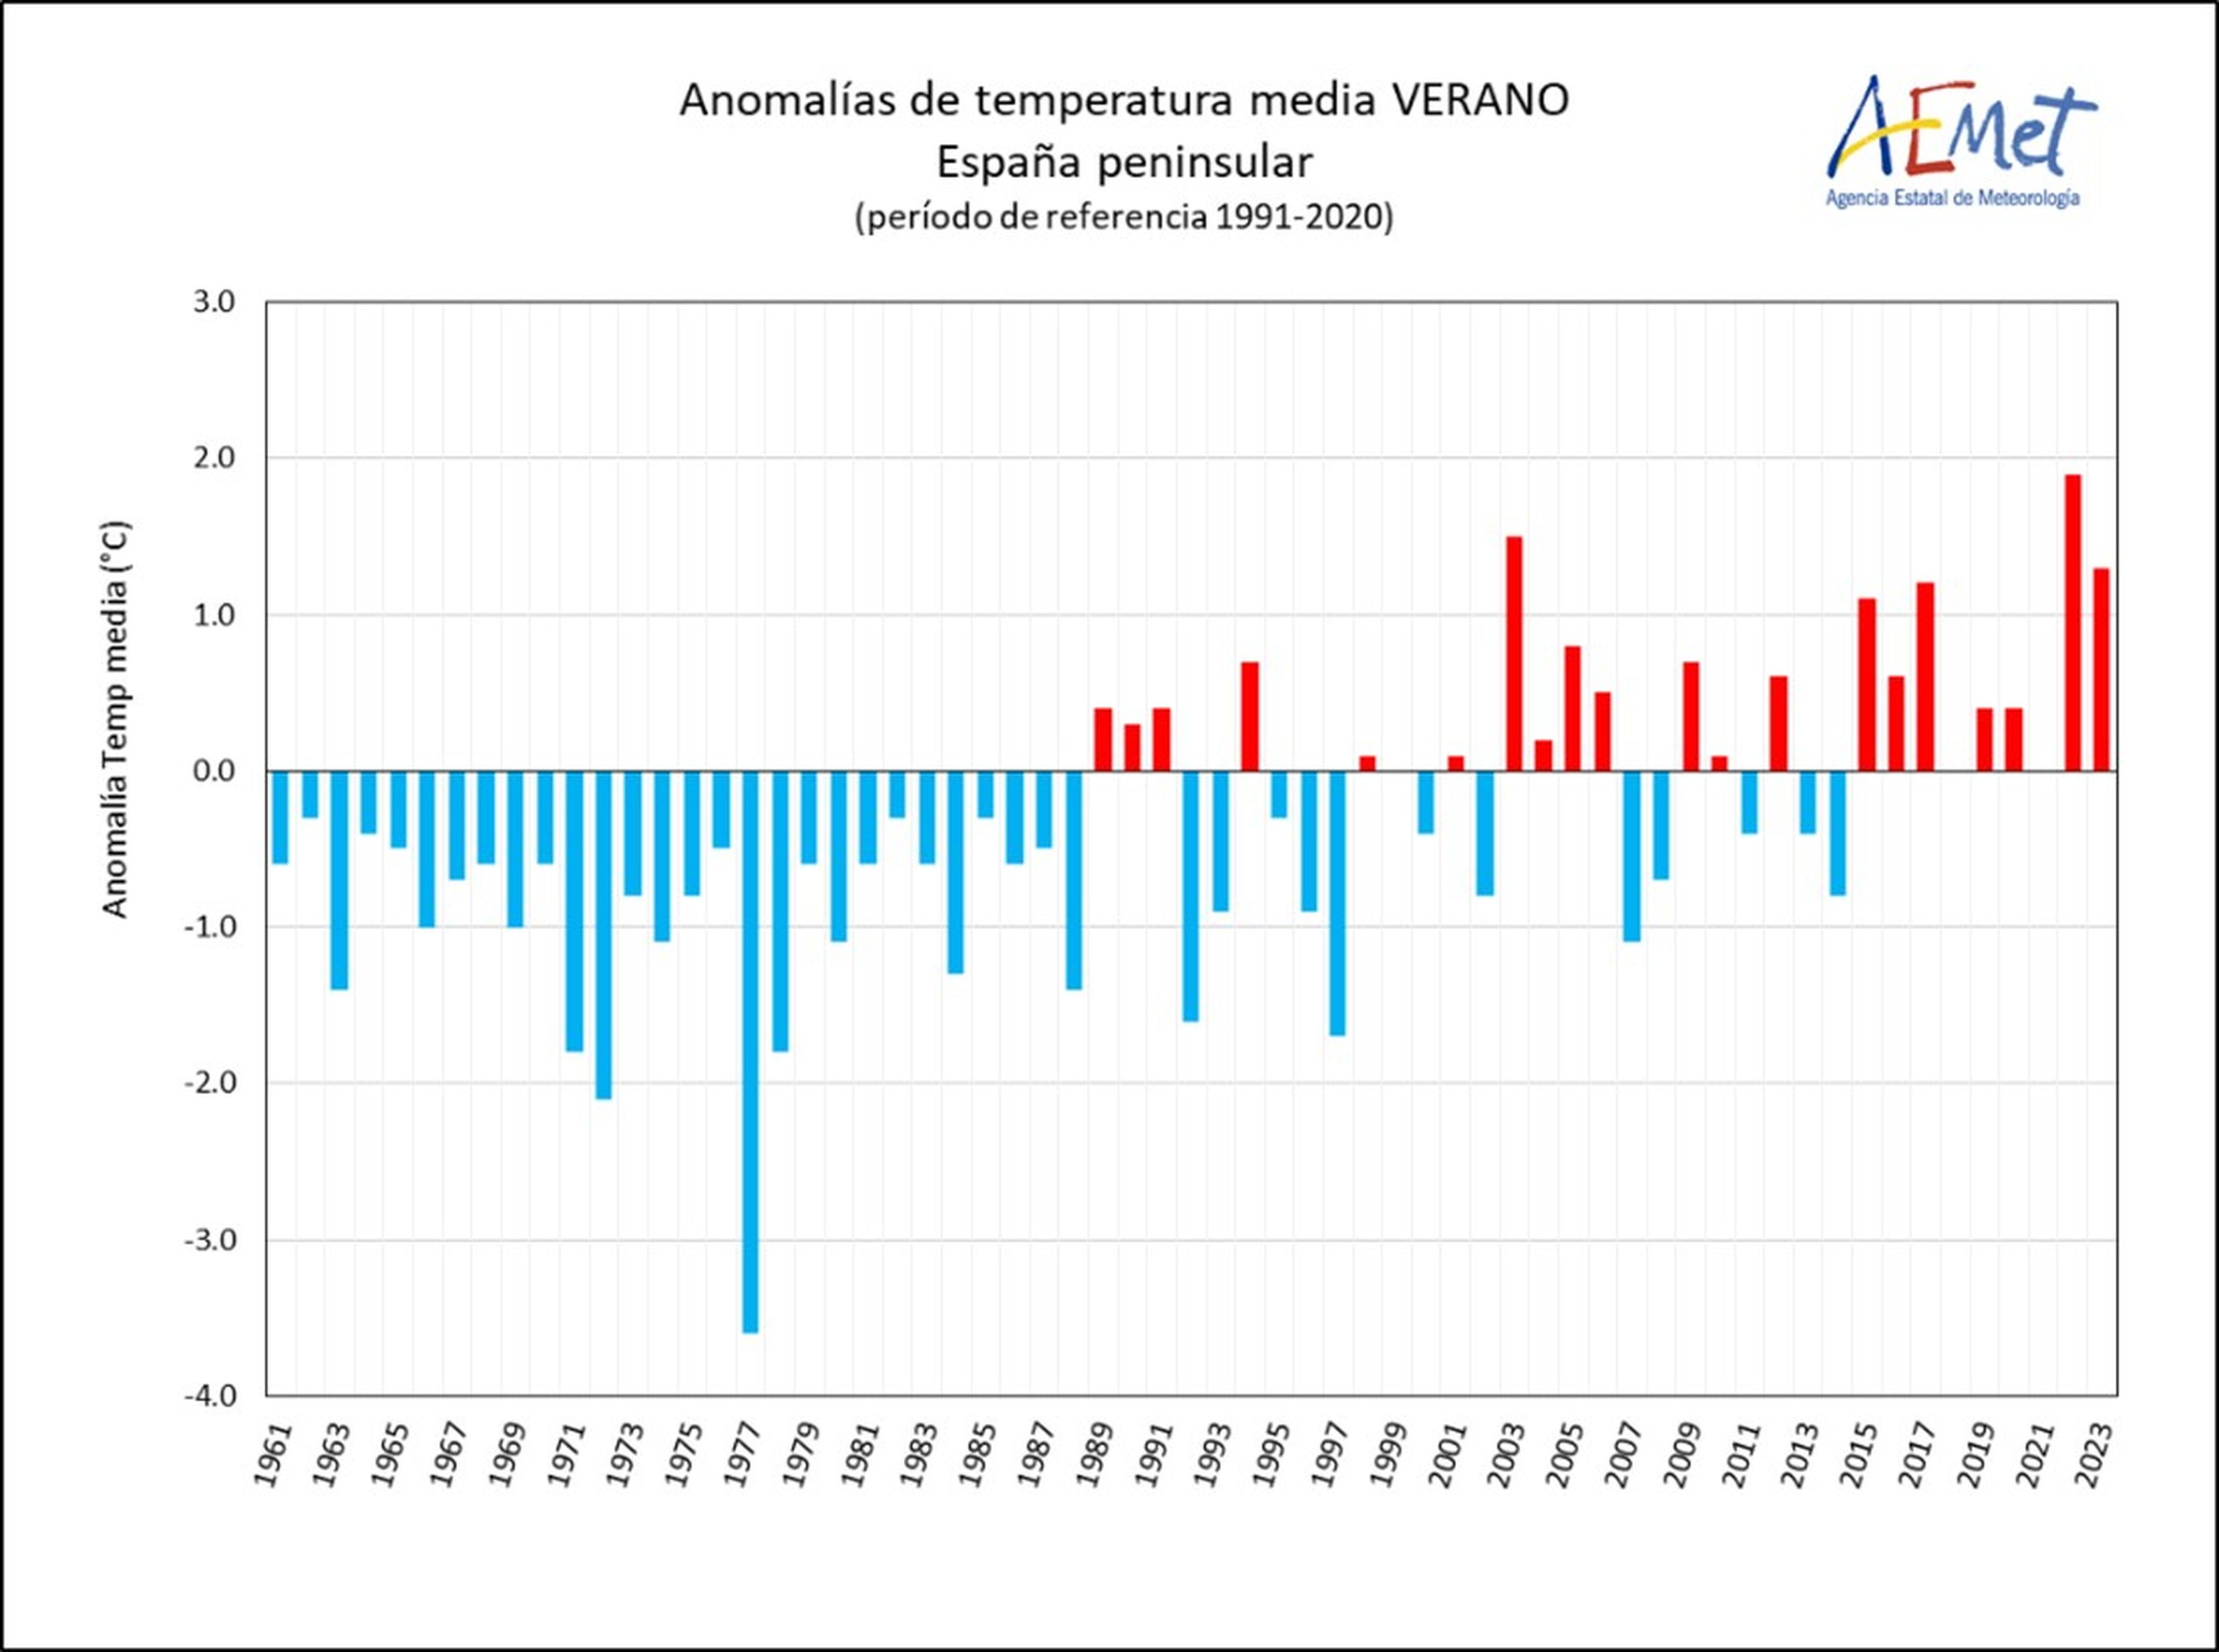 Serie de anomalías de la temperatura media del verano en la España peninsular desde 1961 (Periodo de referencia 1991-2020).